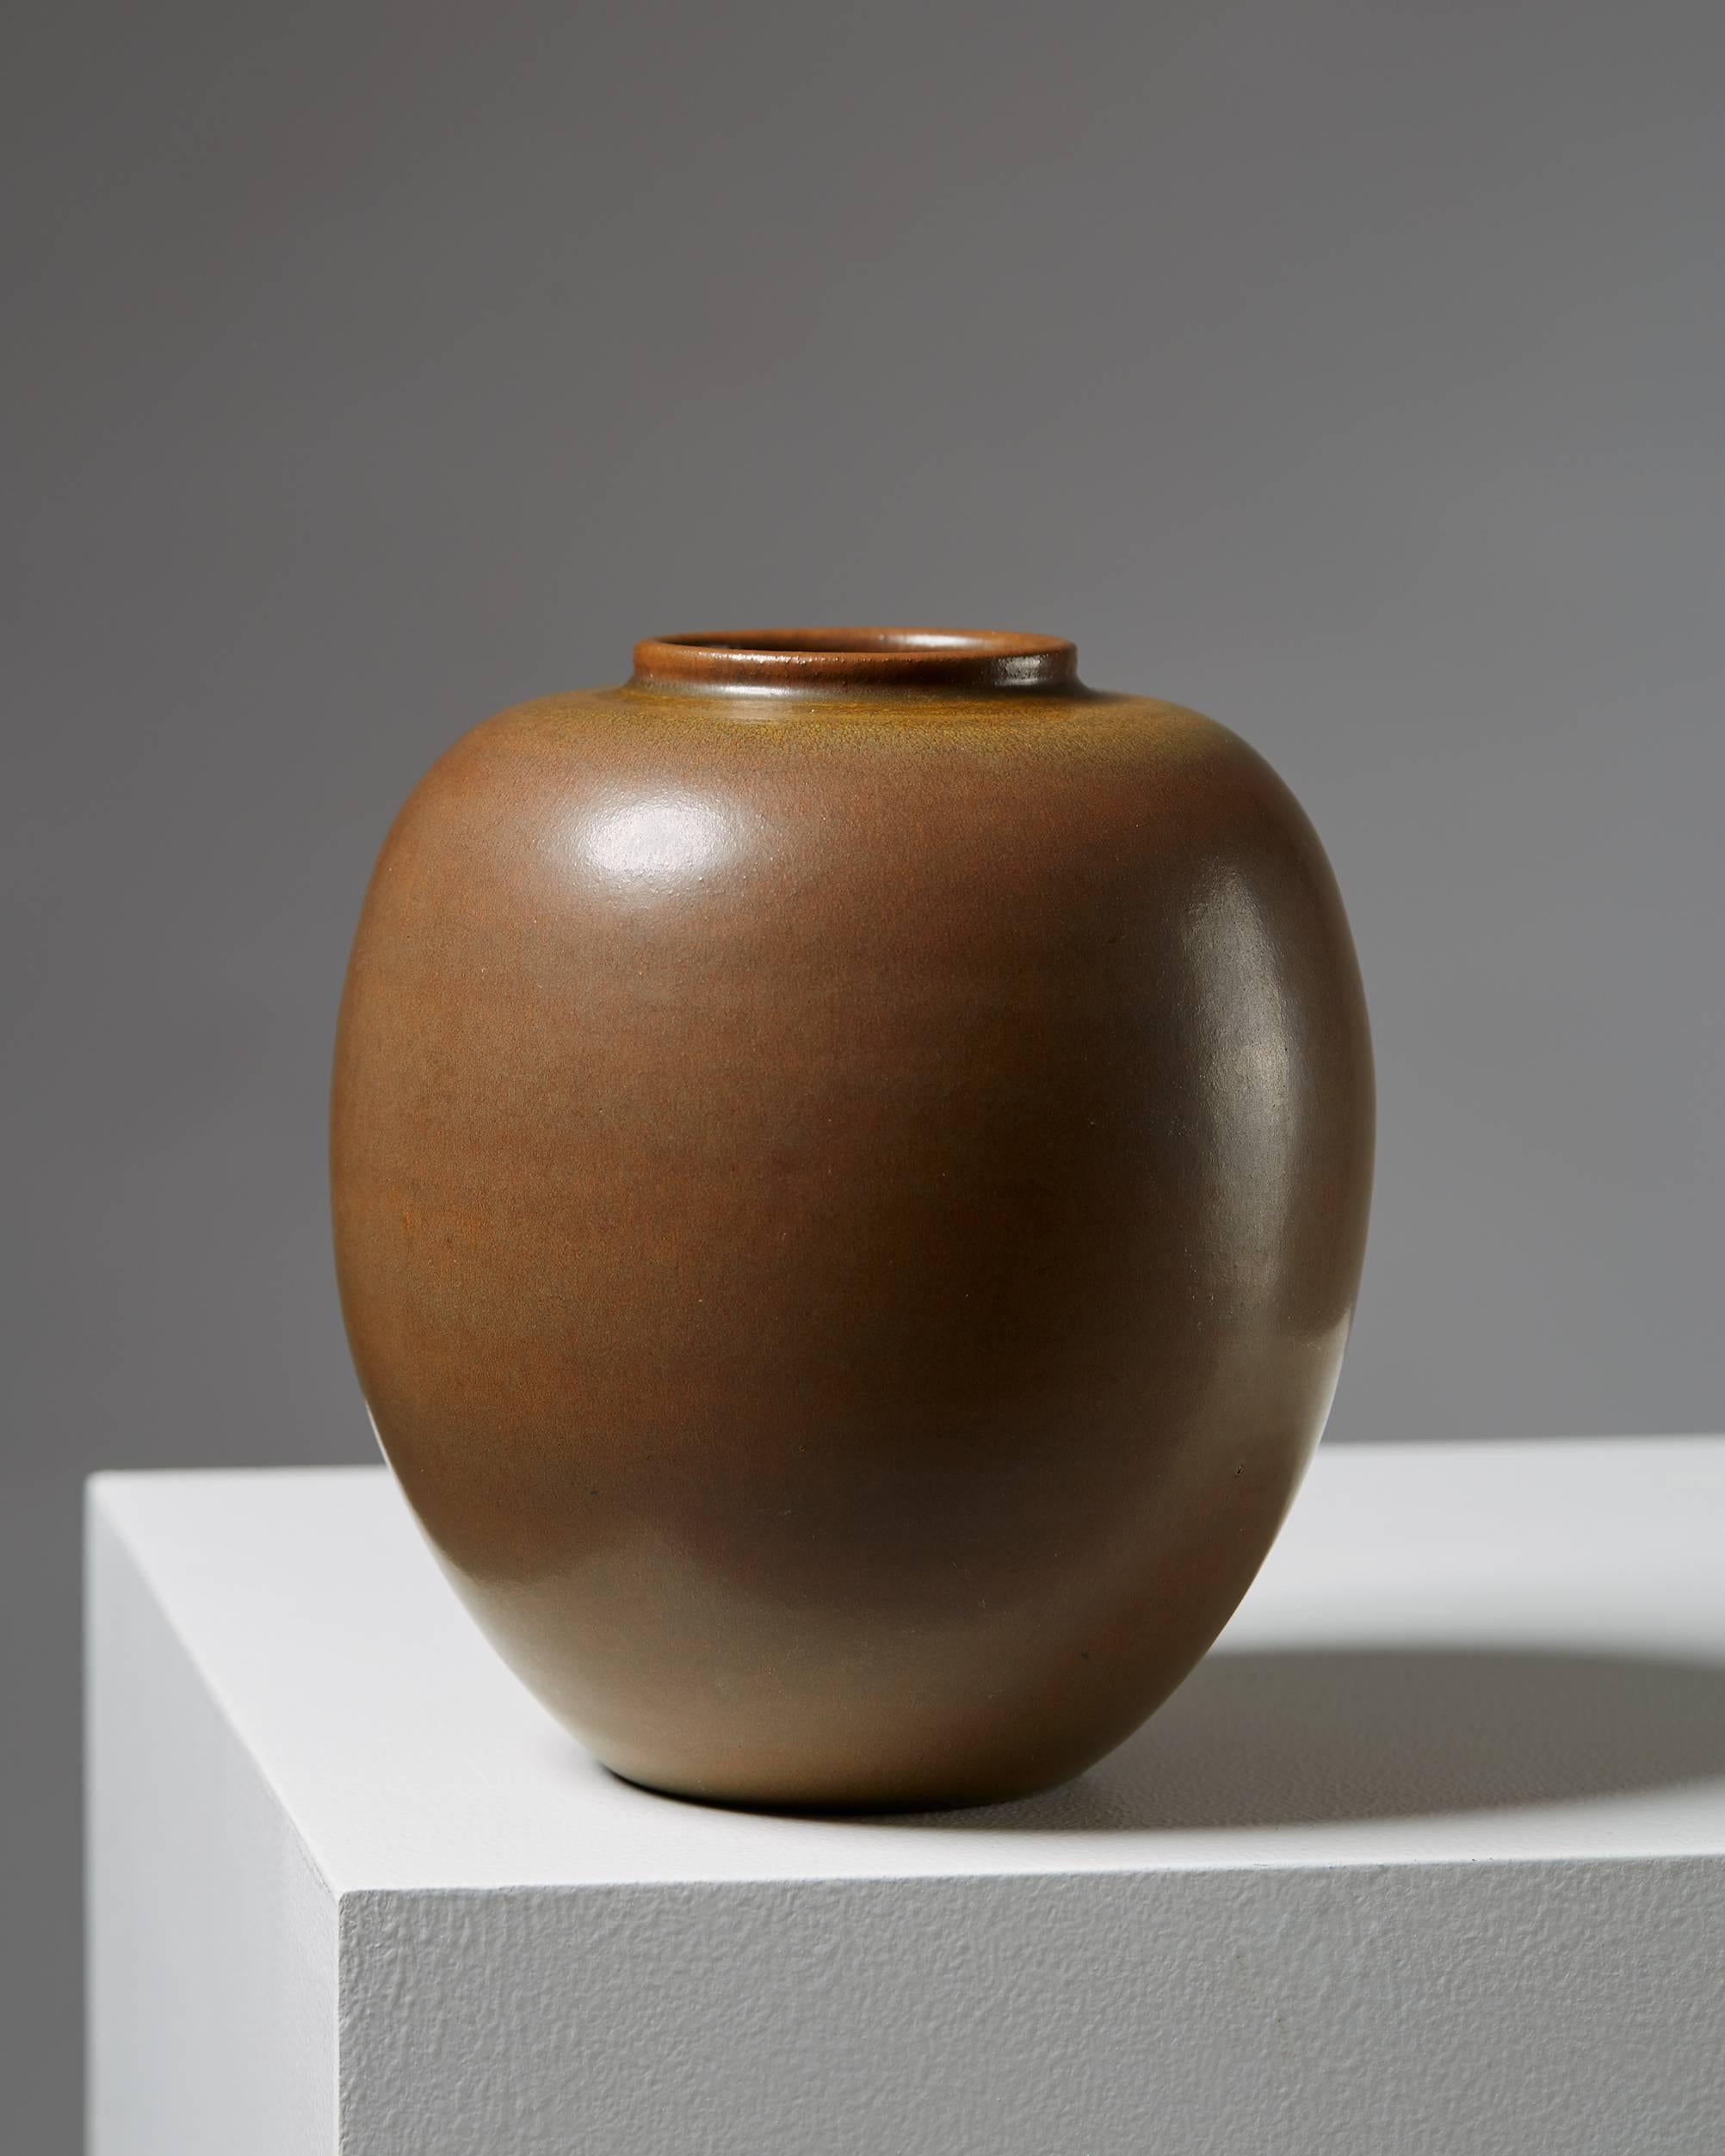 Vase ‘Tobo’ designed by Erich and Ingrid Triller,
Sweden, 1940s.

Stoneware.

Dimensions:
H: 18 cm/ 7''